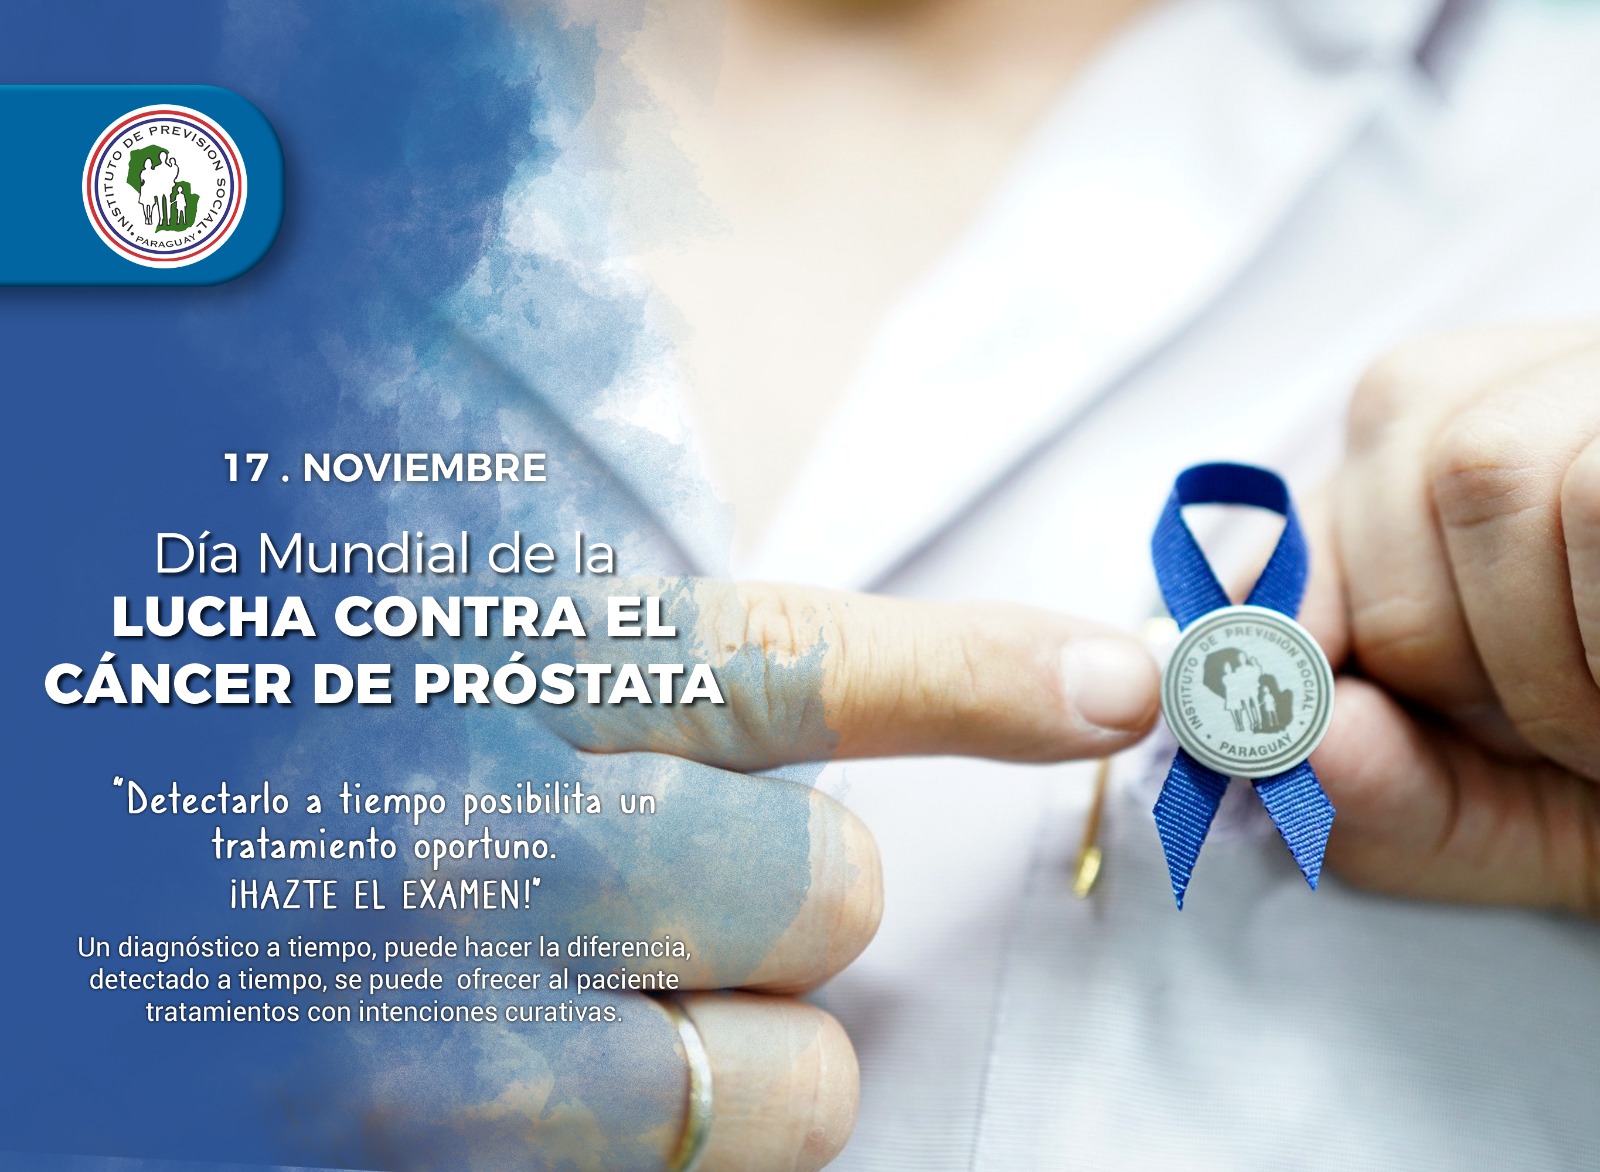 Día Mundial del Cáncer de Próstata.